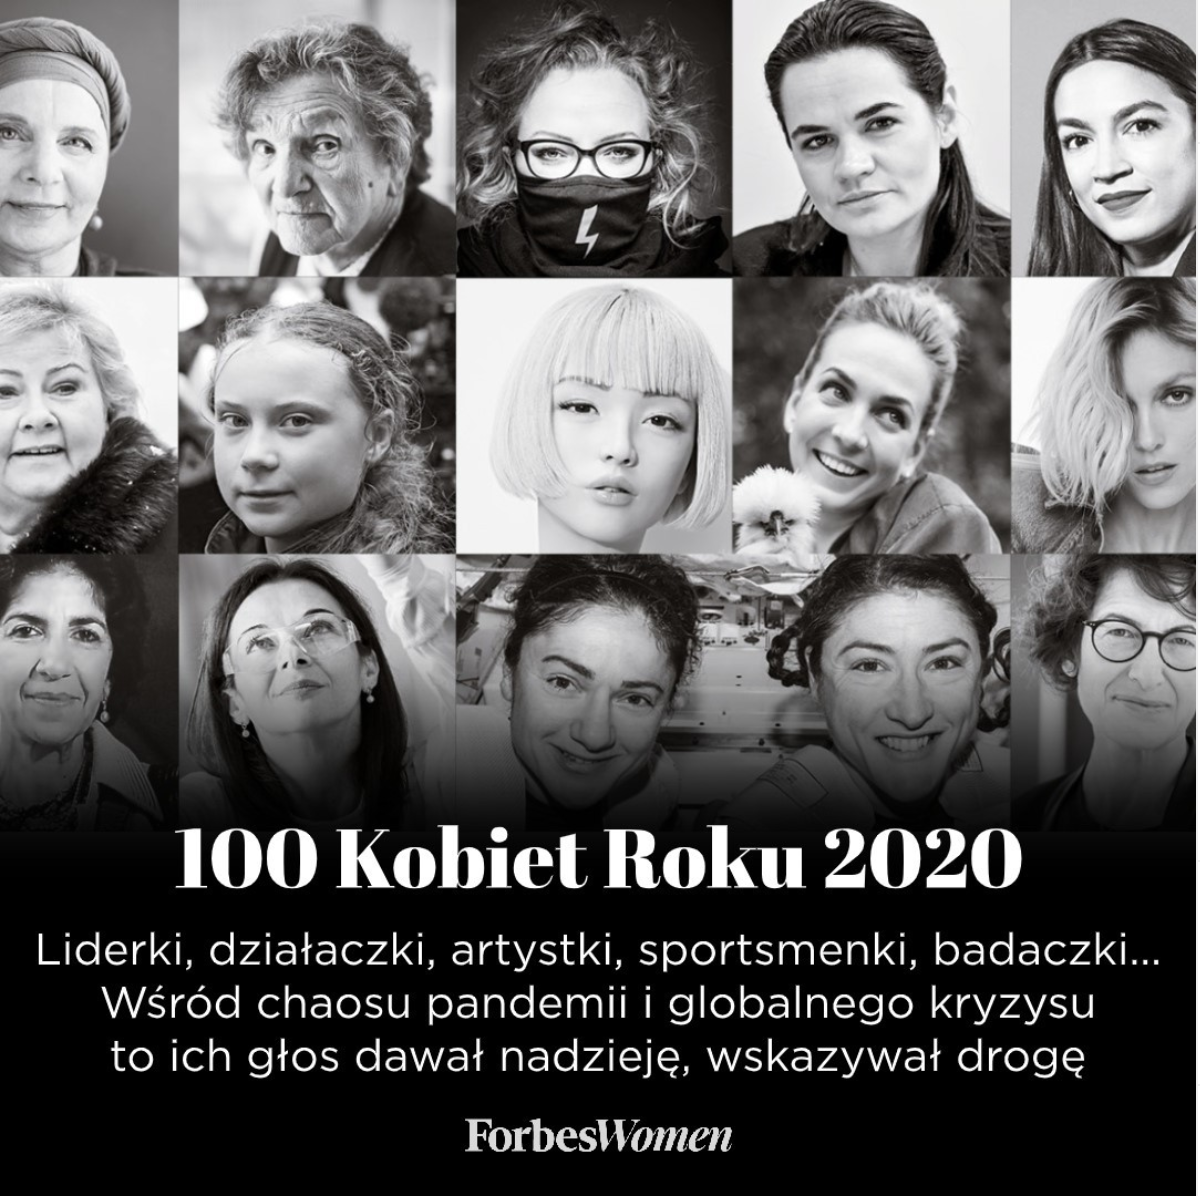 バーチャルヒューマン「imma」がForbes「Women of the Year 2020」に選出